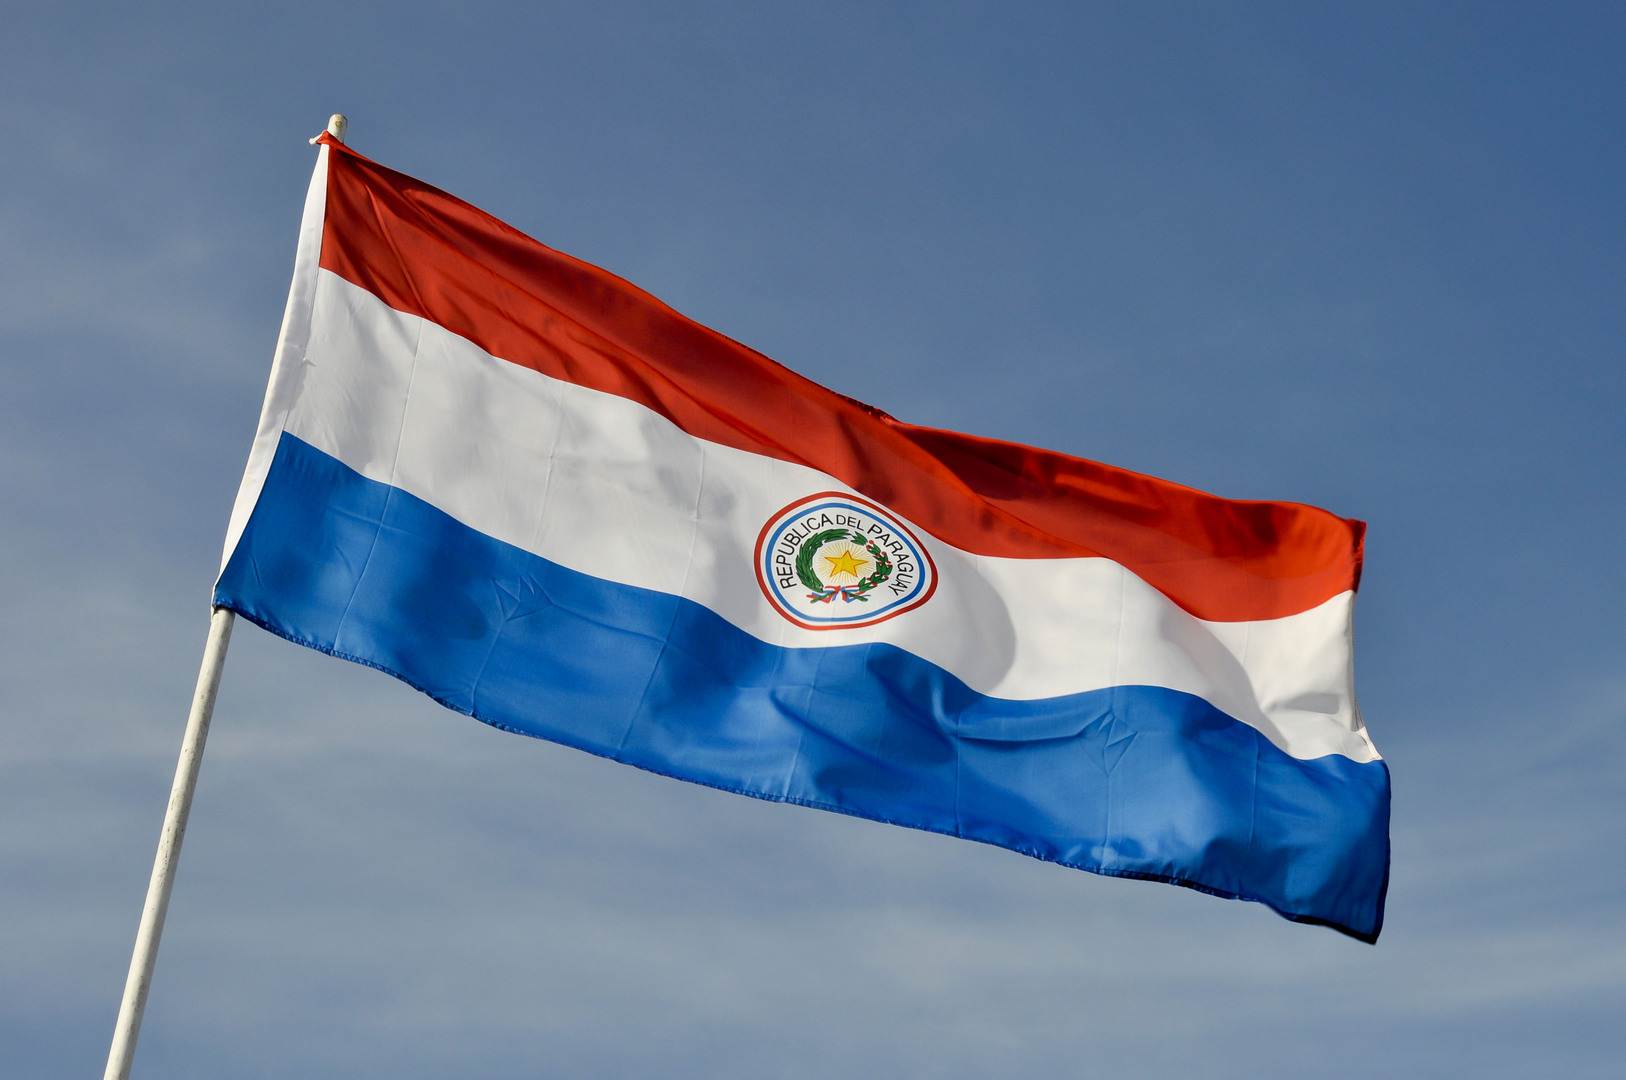 السفير الروسي في باراغواي: الولايات المتحدة تدخلت في انتخابات هذا البلد